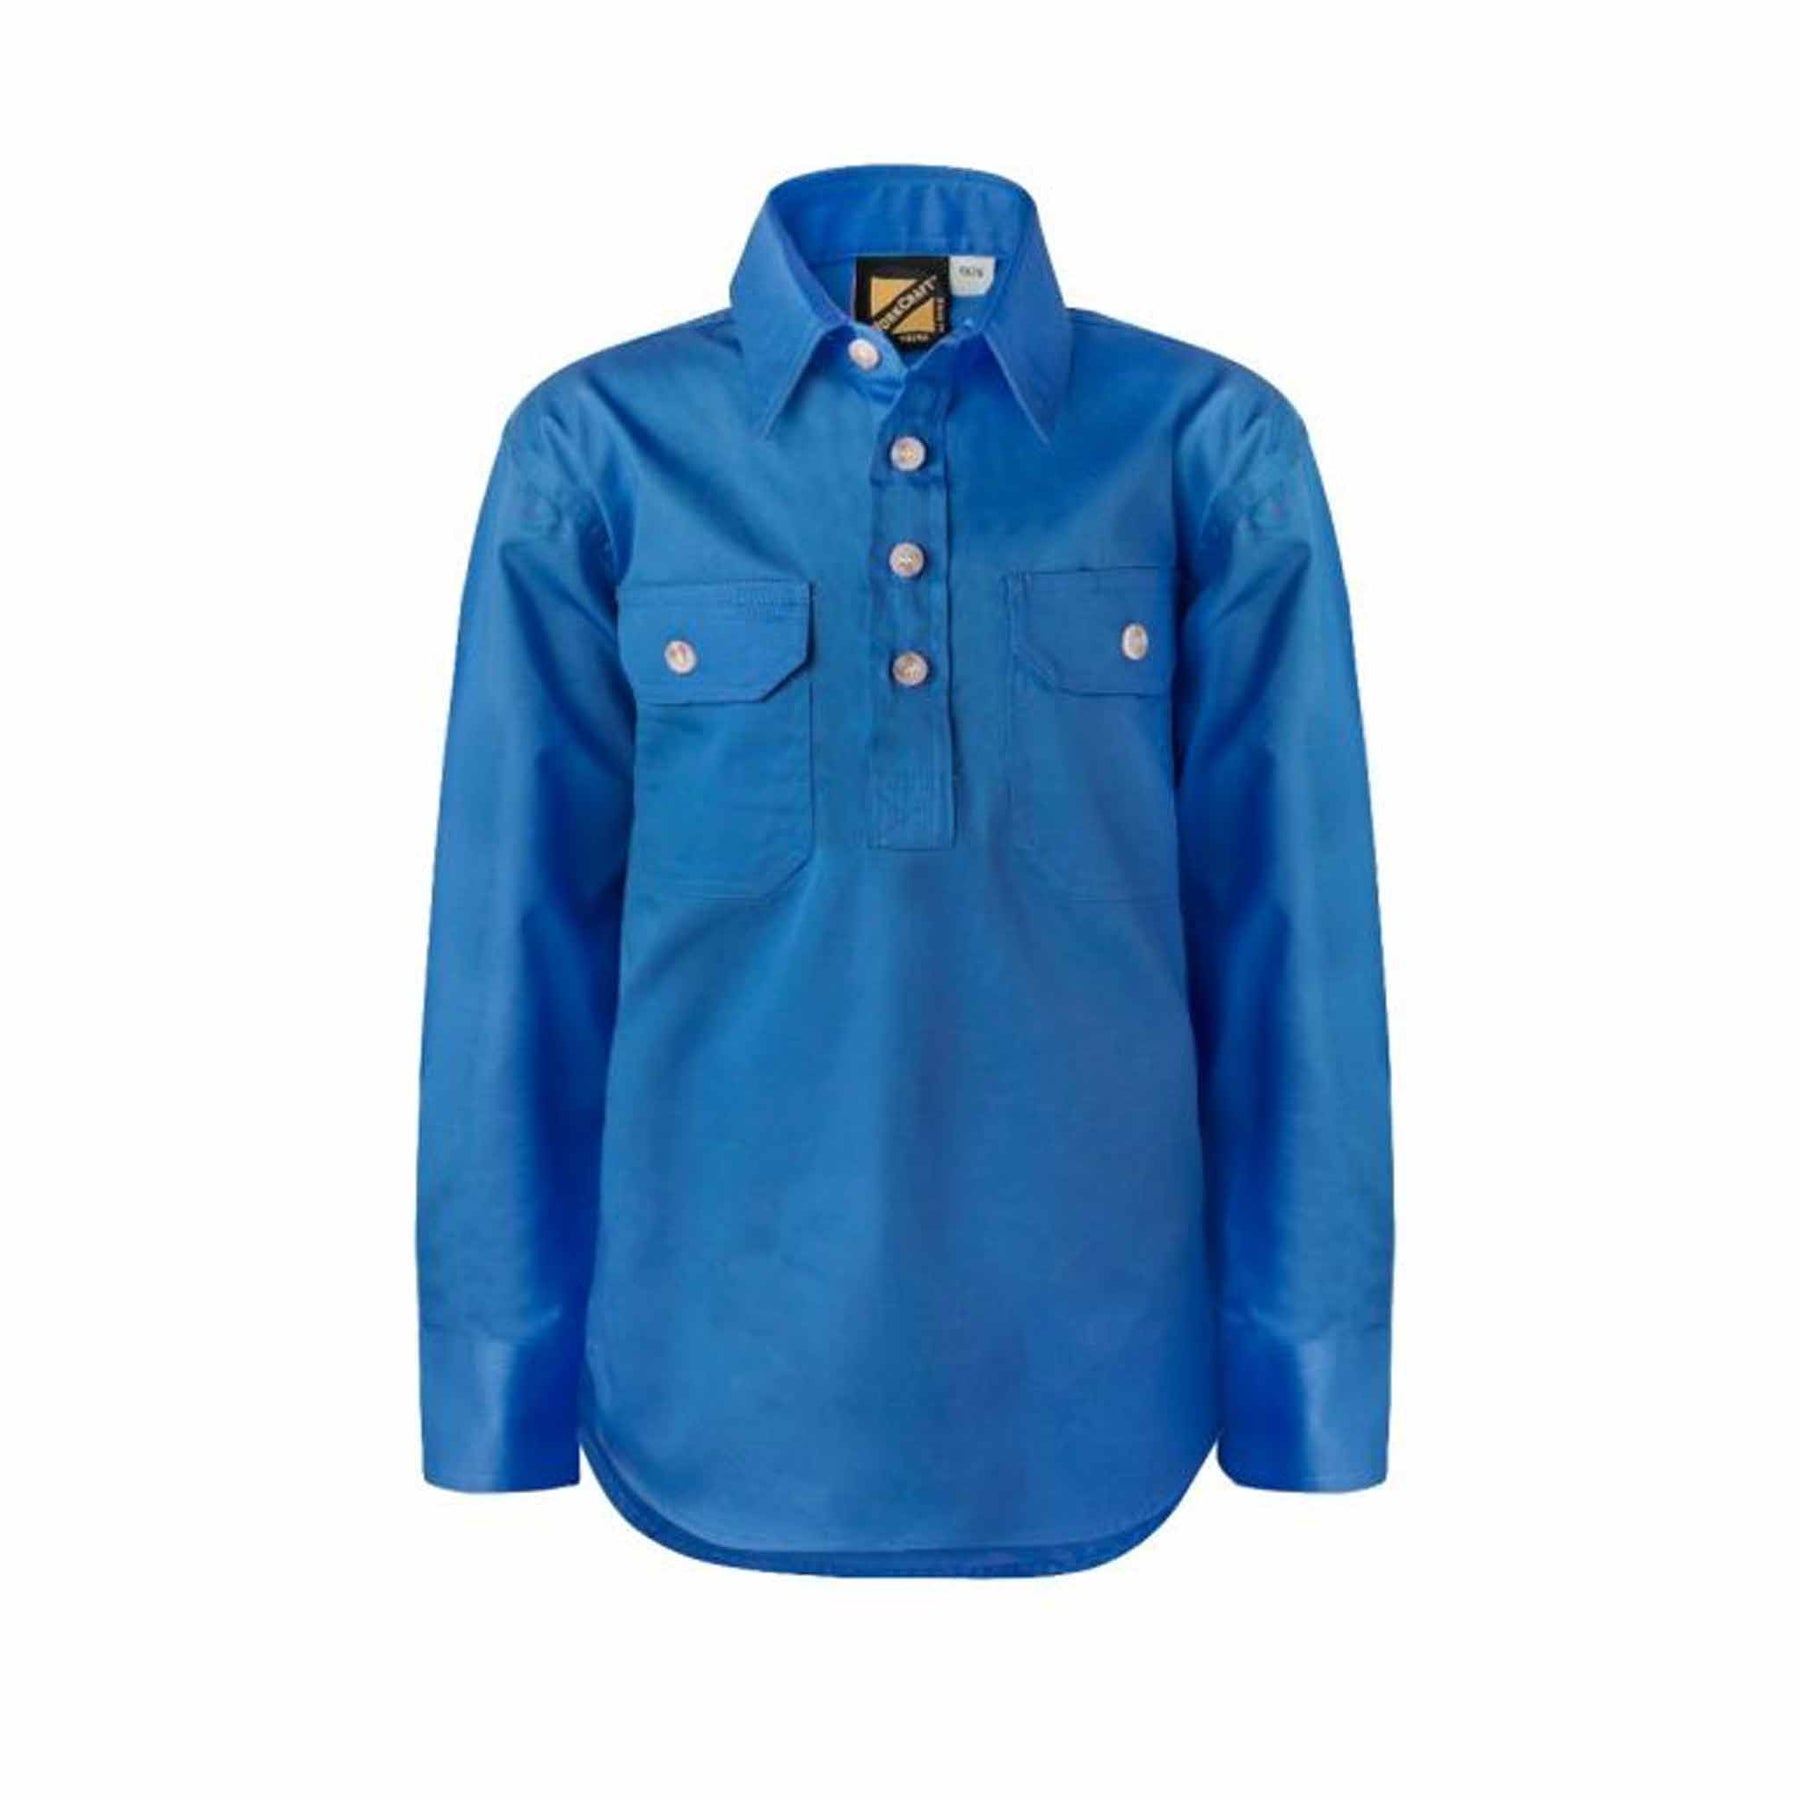 kids lightweight half placket long sleeve shirt in cobalt blue